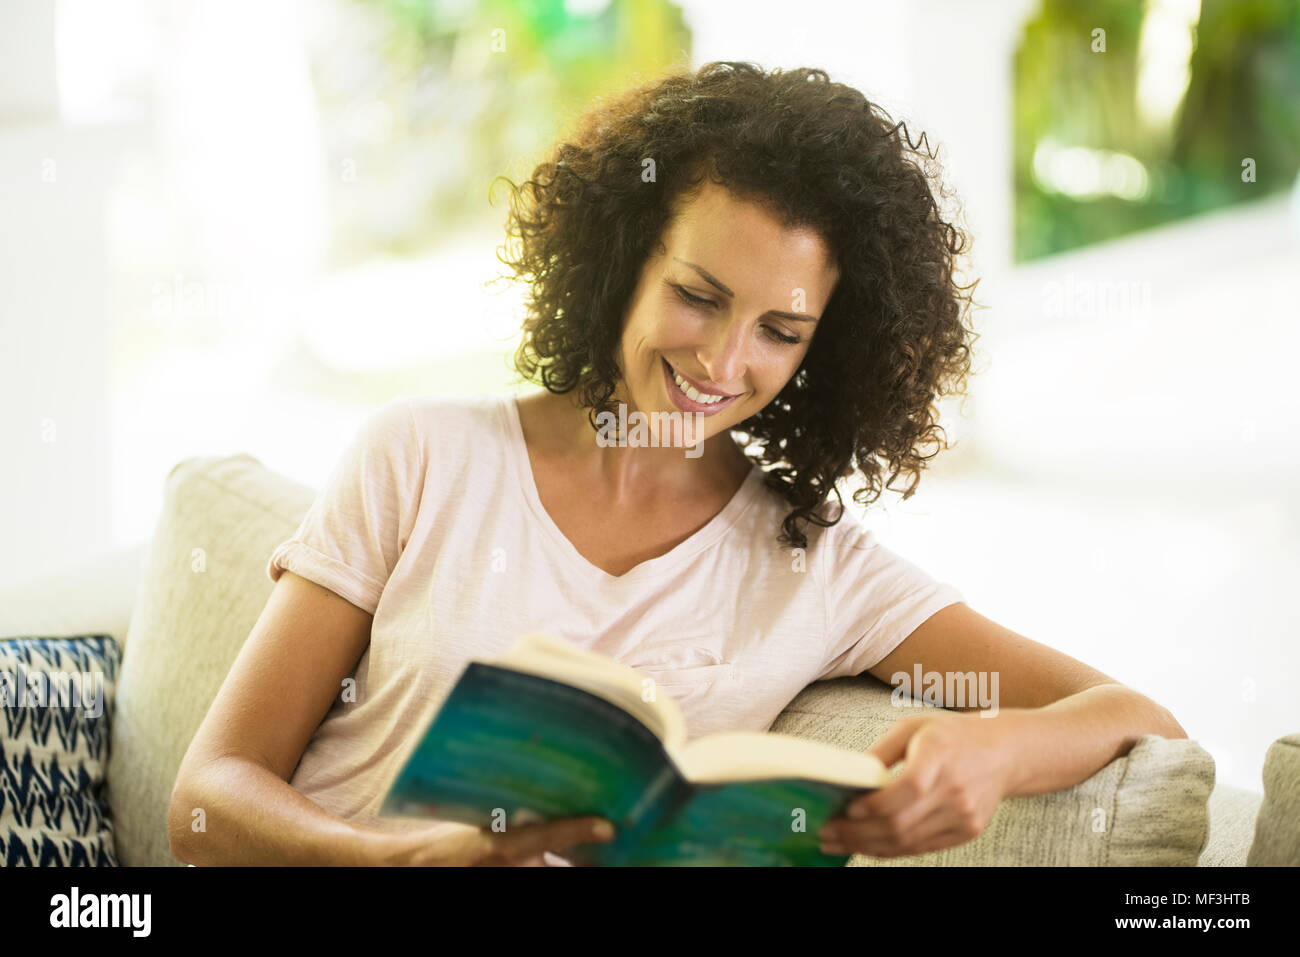 Femme souriante avec des cheveux bouclés la lecture d'un livre Banque D'Images